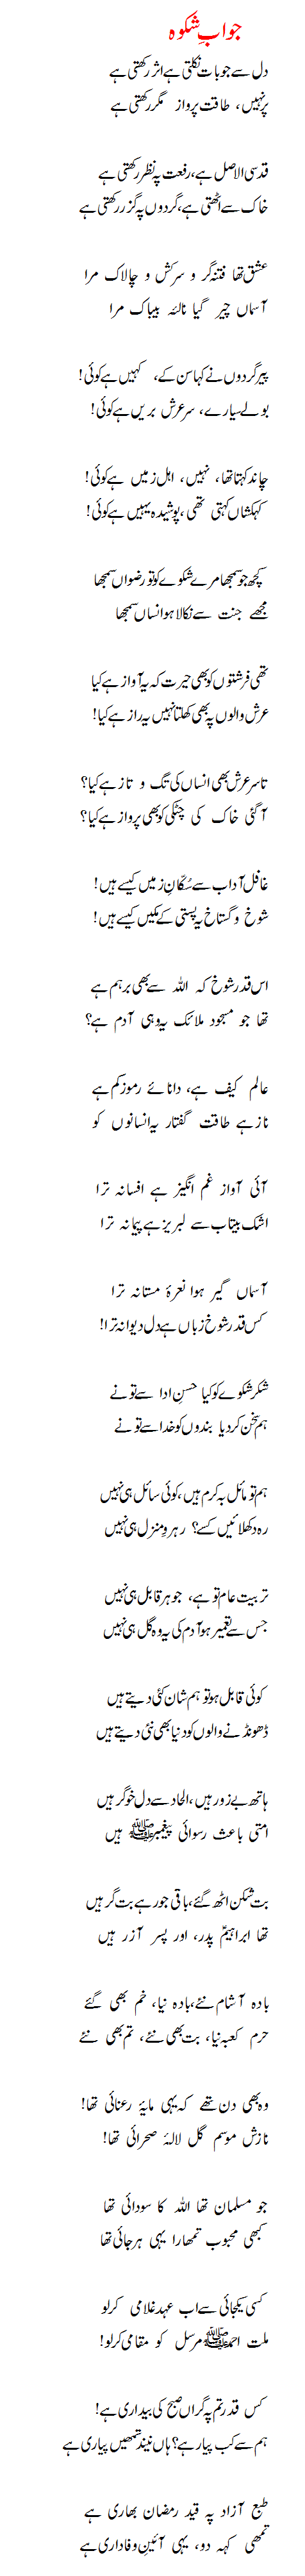 allama iqbal poetry shikwa jawab e shikwa in urdu